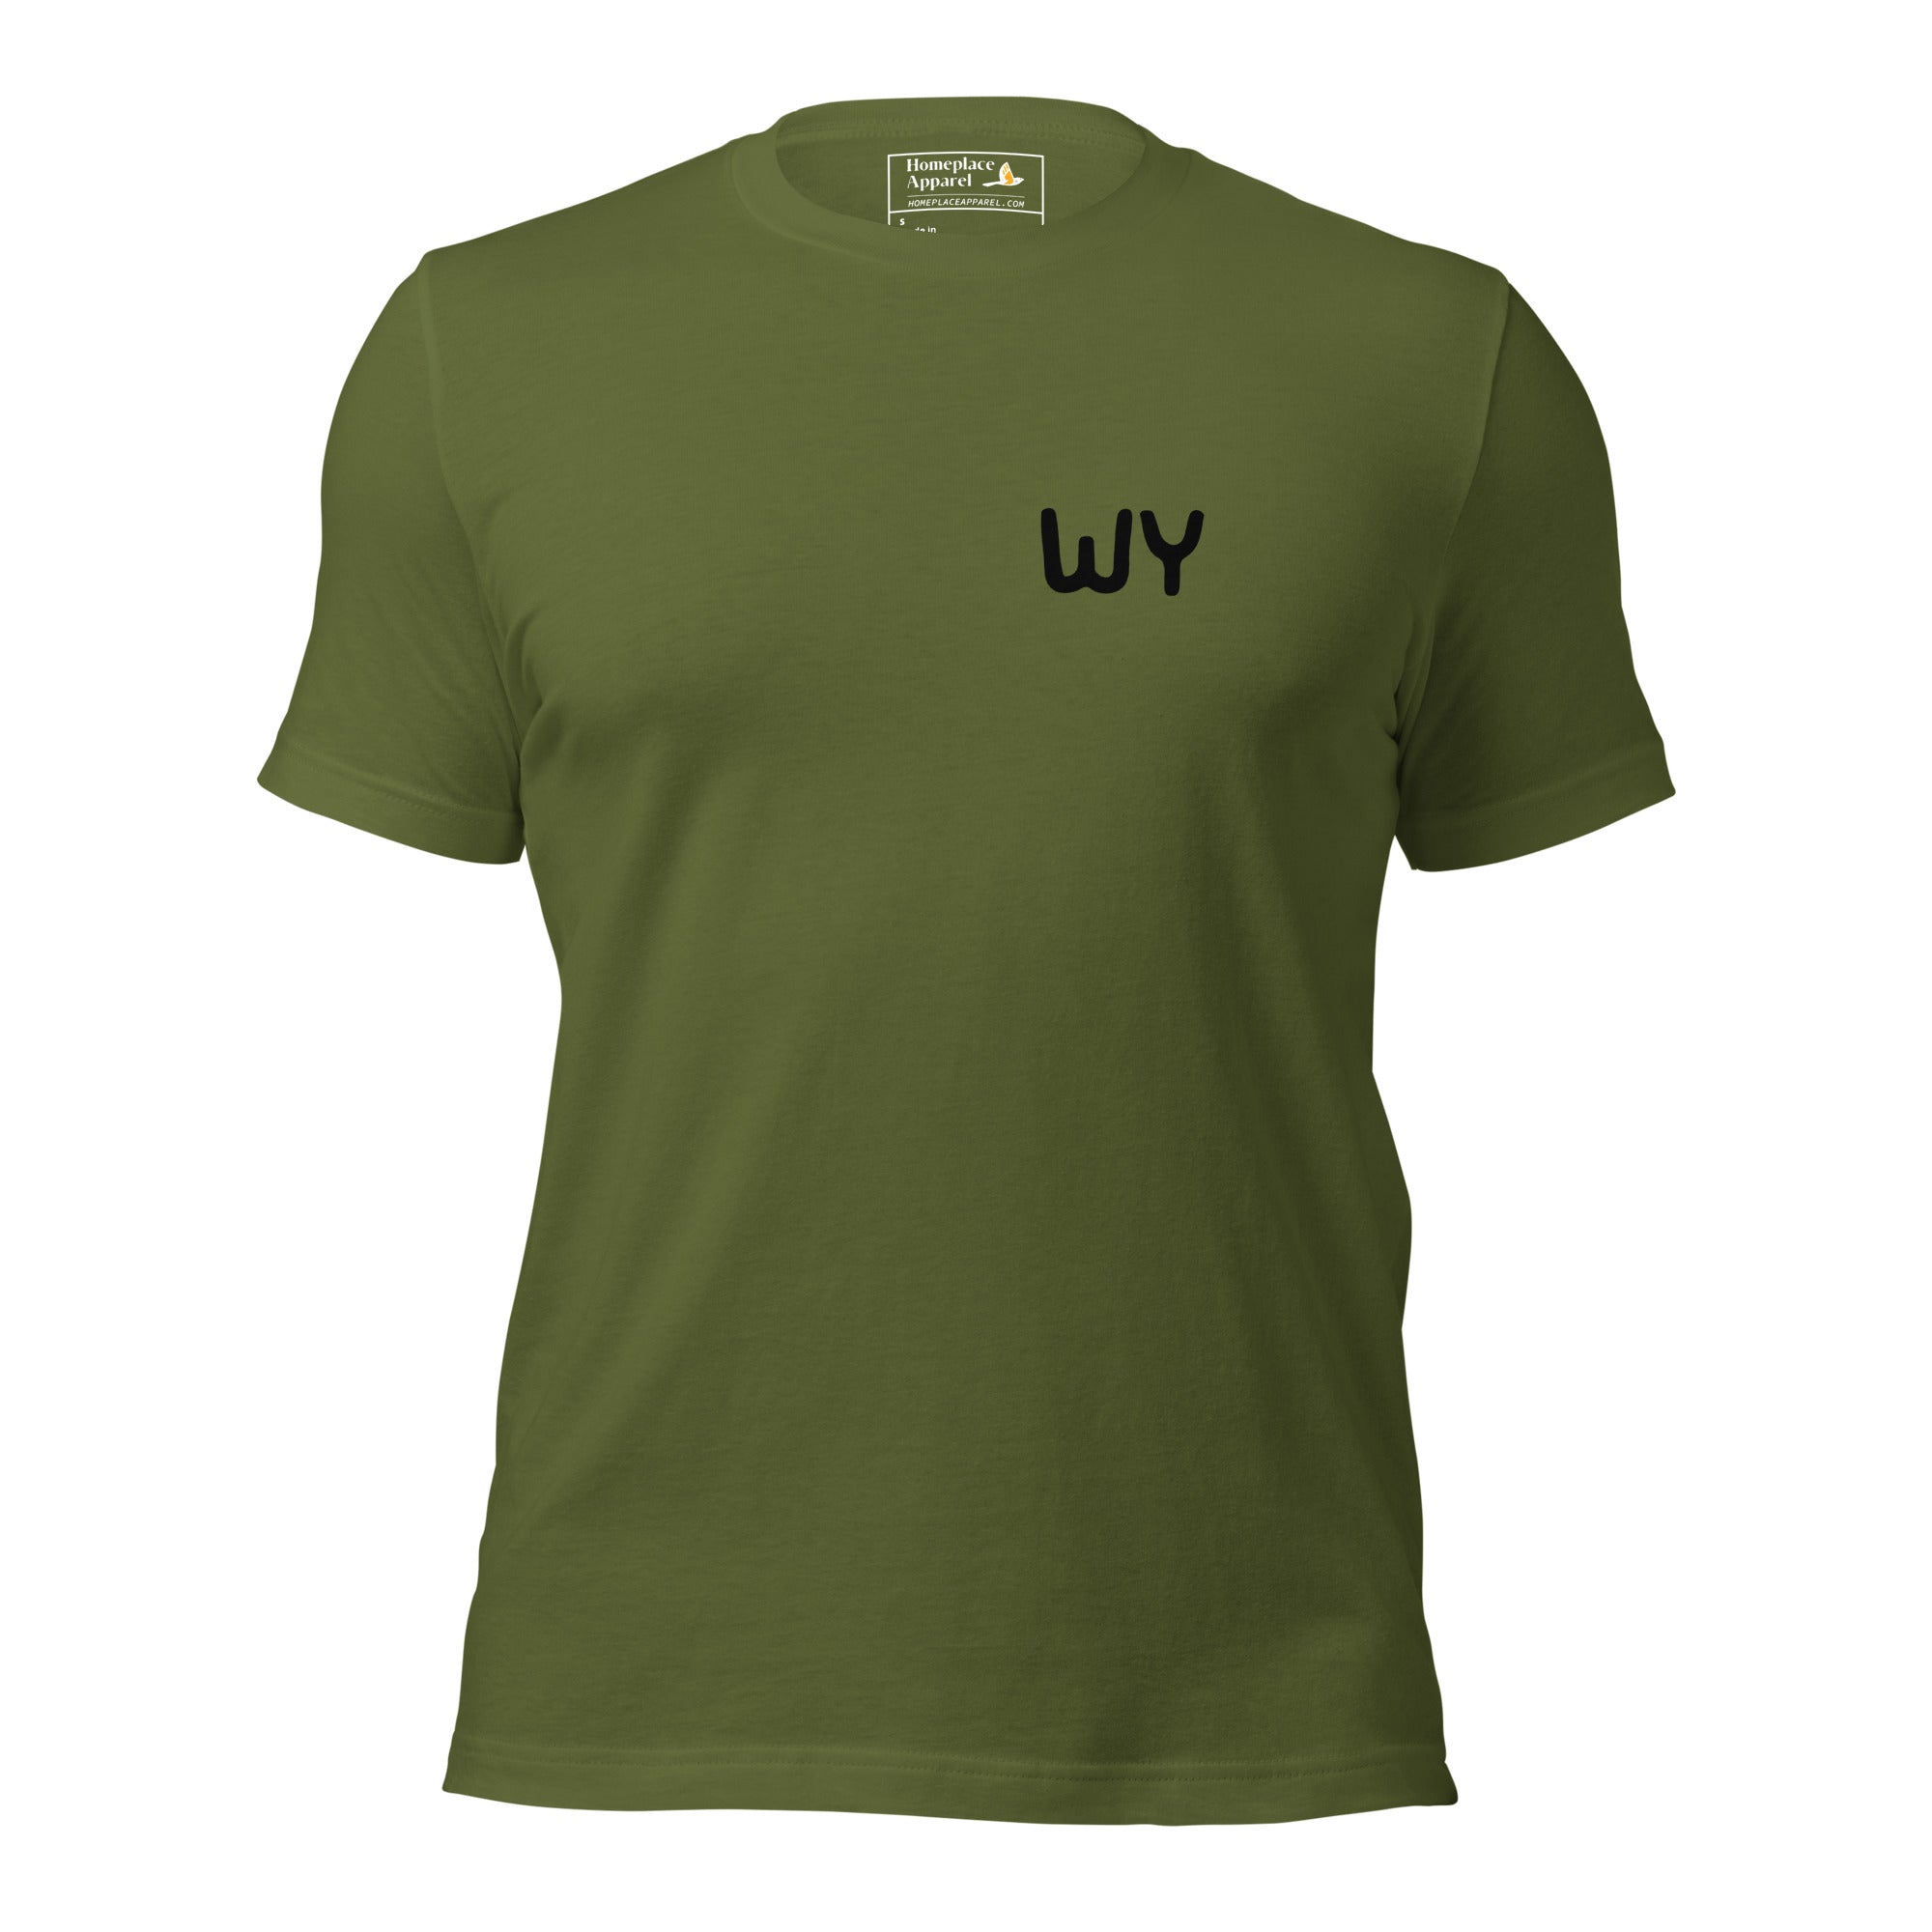 unisex-staple-t-shirt-olive-front-650c6f5167bb1.jpg